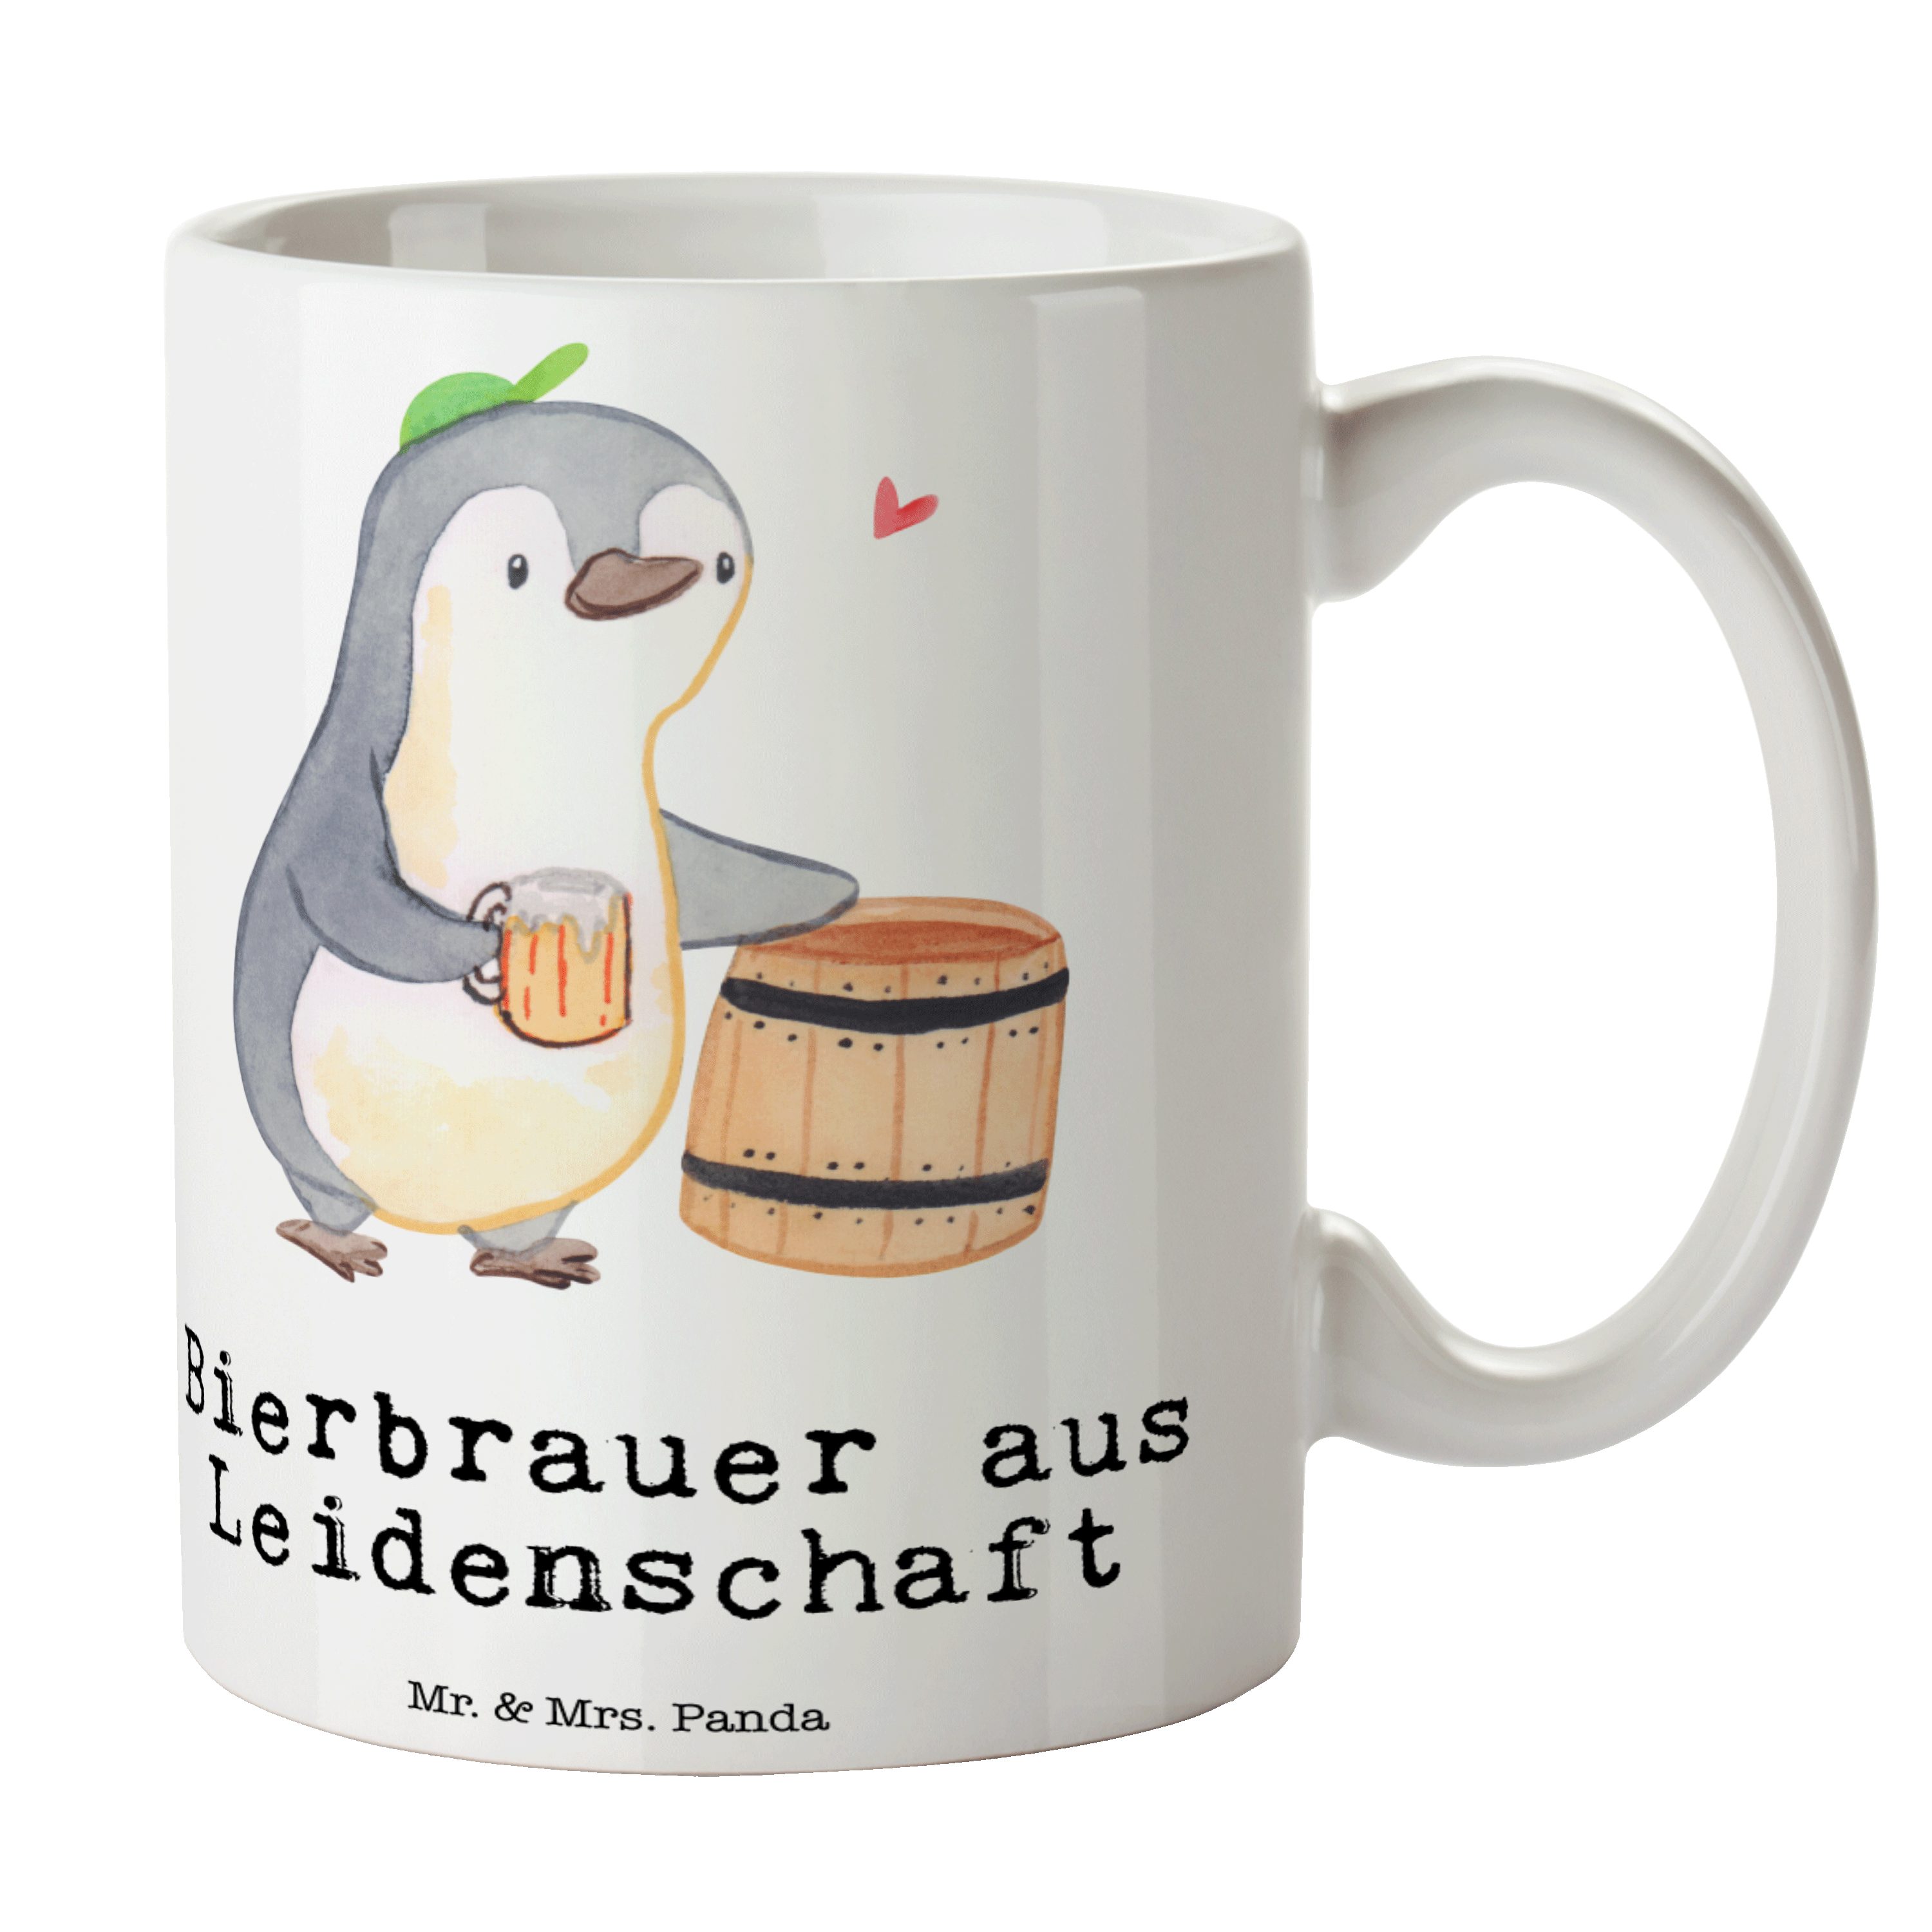 Mr. & Mrs. Panda Tasse Bierbrauer aus Leidenschaft - Weiß - Geschenk, Kaffeebecher, Oktoberf, Keramik